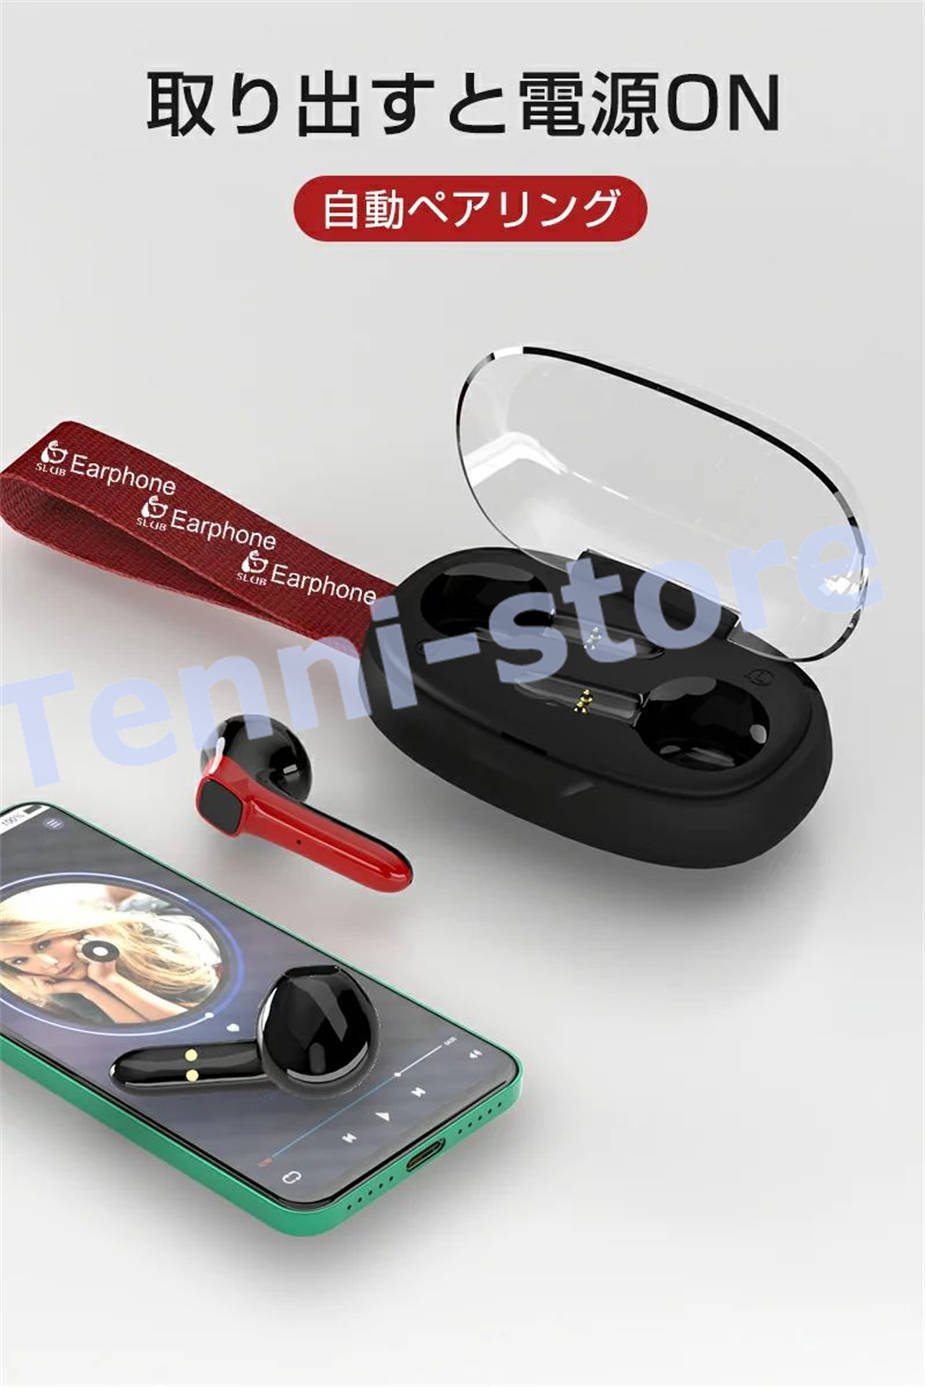 ワイヤレスイヤホン Bluetooth5.0 ヘッドセット 防水防汗 充電ケース付き HIFI高音質...